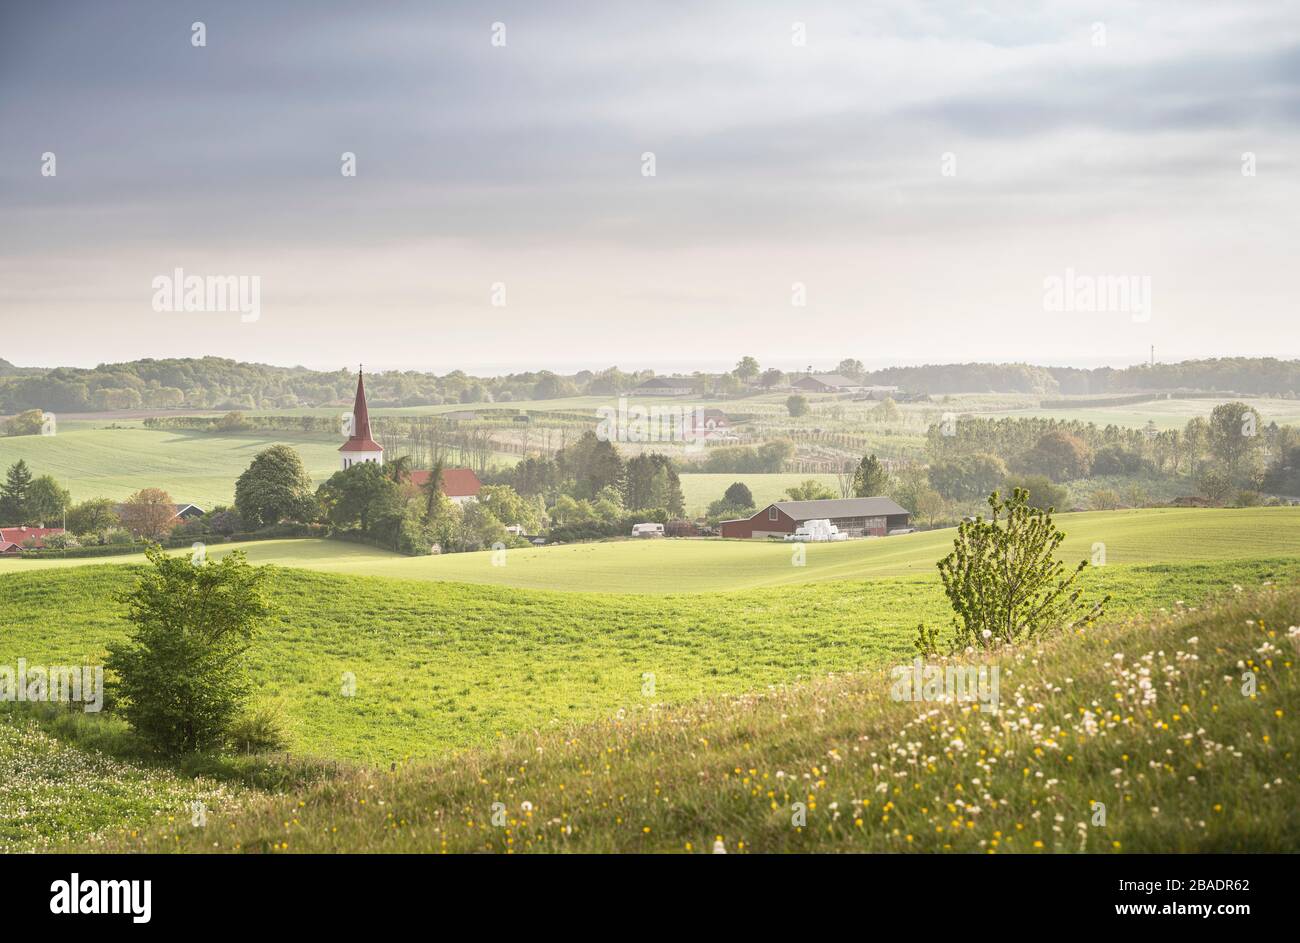 Le village de Rorum dans le paysage rural.Skane, Suède, Scandinavie. Banque D'Images